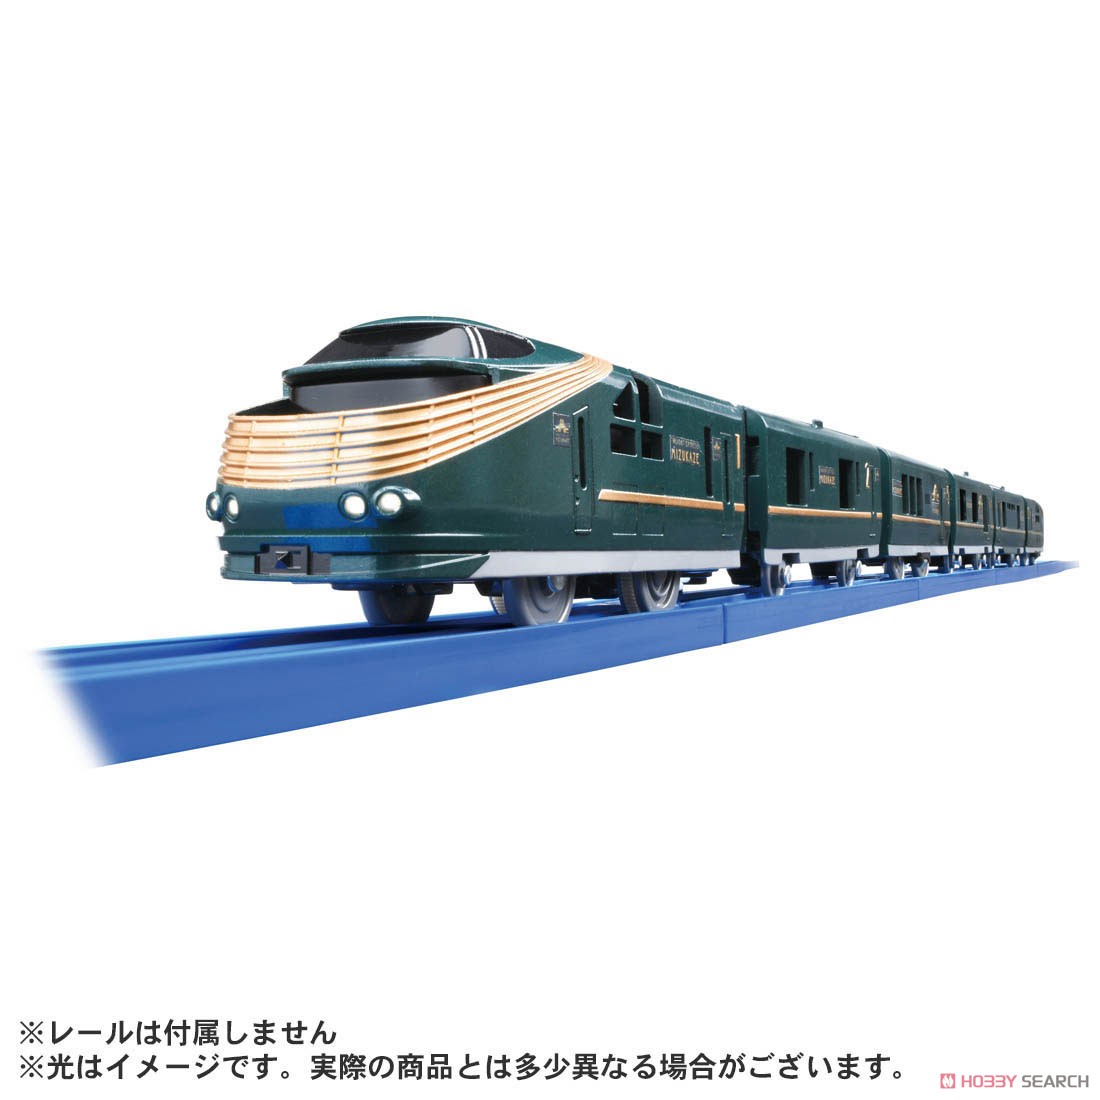 クルーズトレインDXシリーズ TWILIGHT EXPRESS 瑞風 (プラレール) 商品画像4